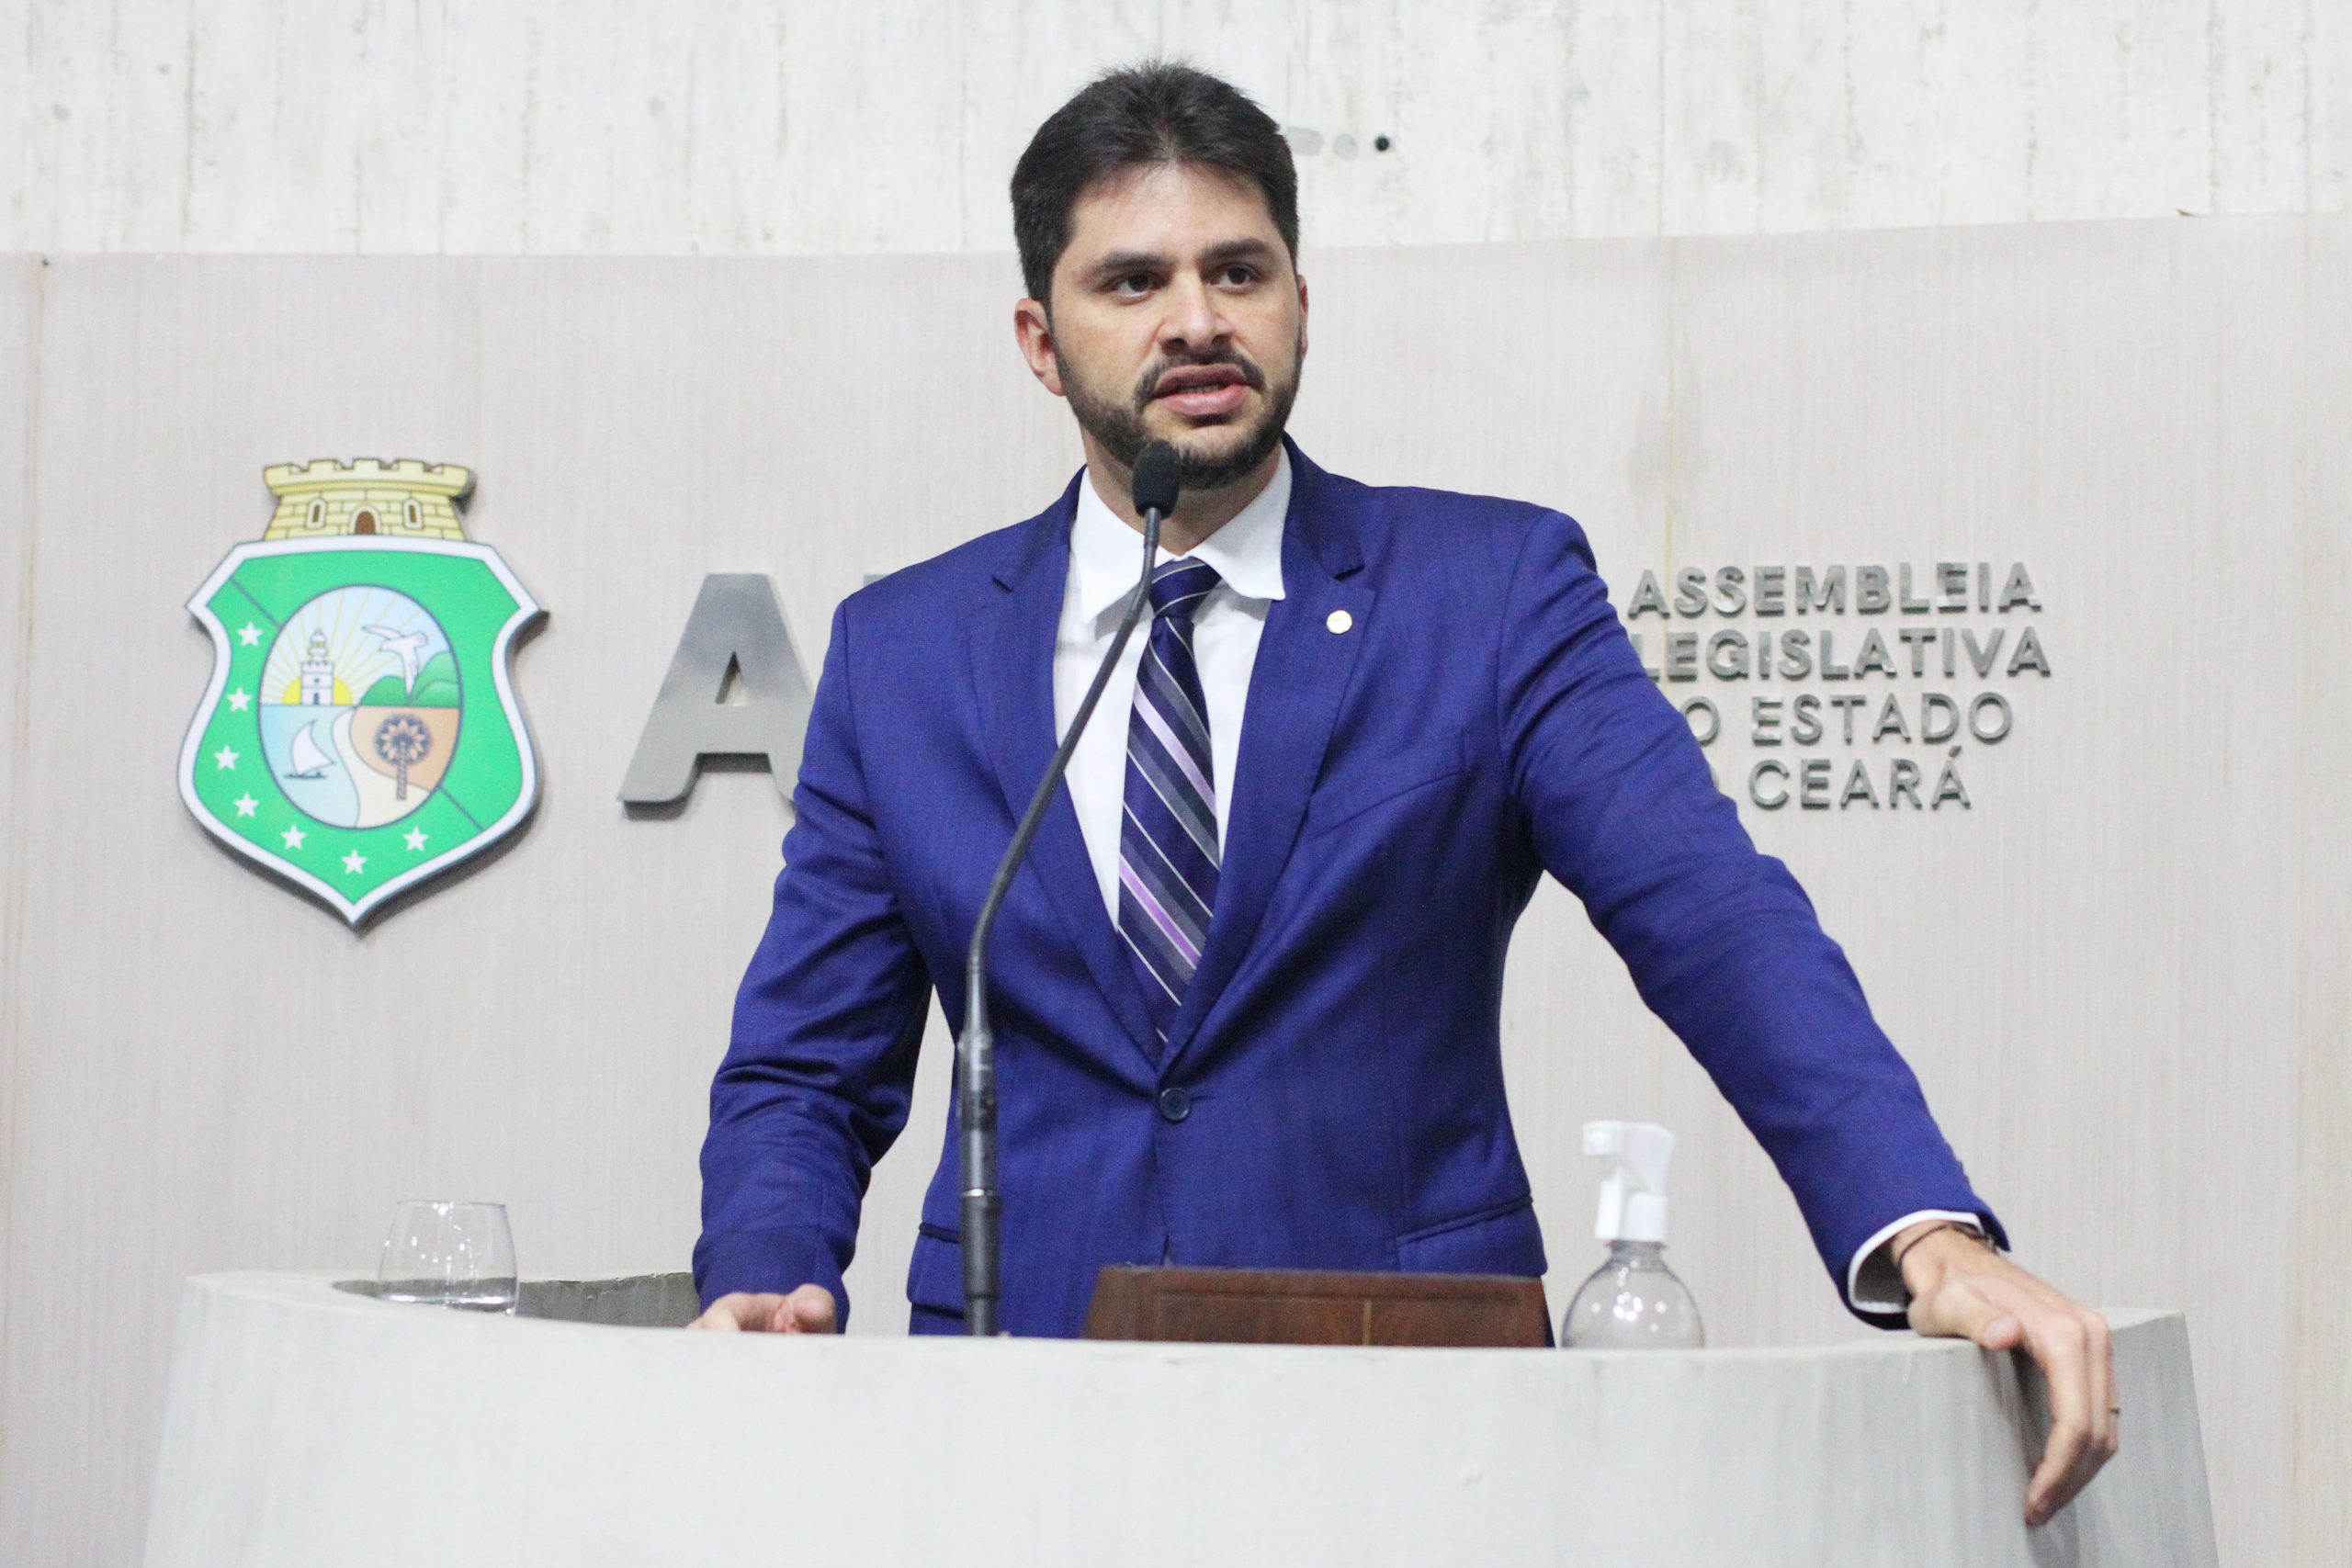 Guilherme Landim é mantido na liderança do PDT na Assembleia Legislativa